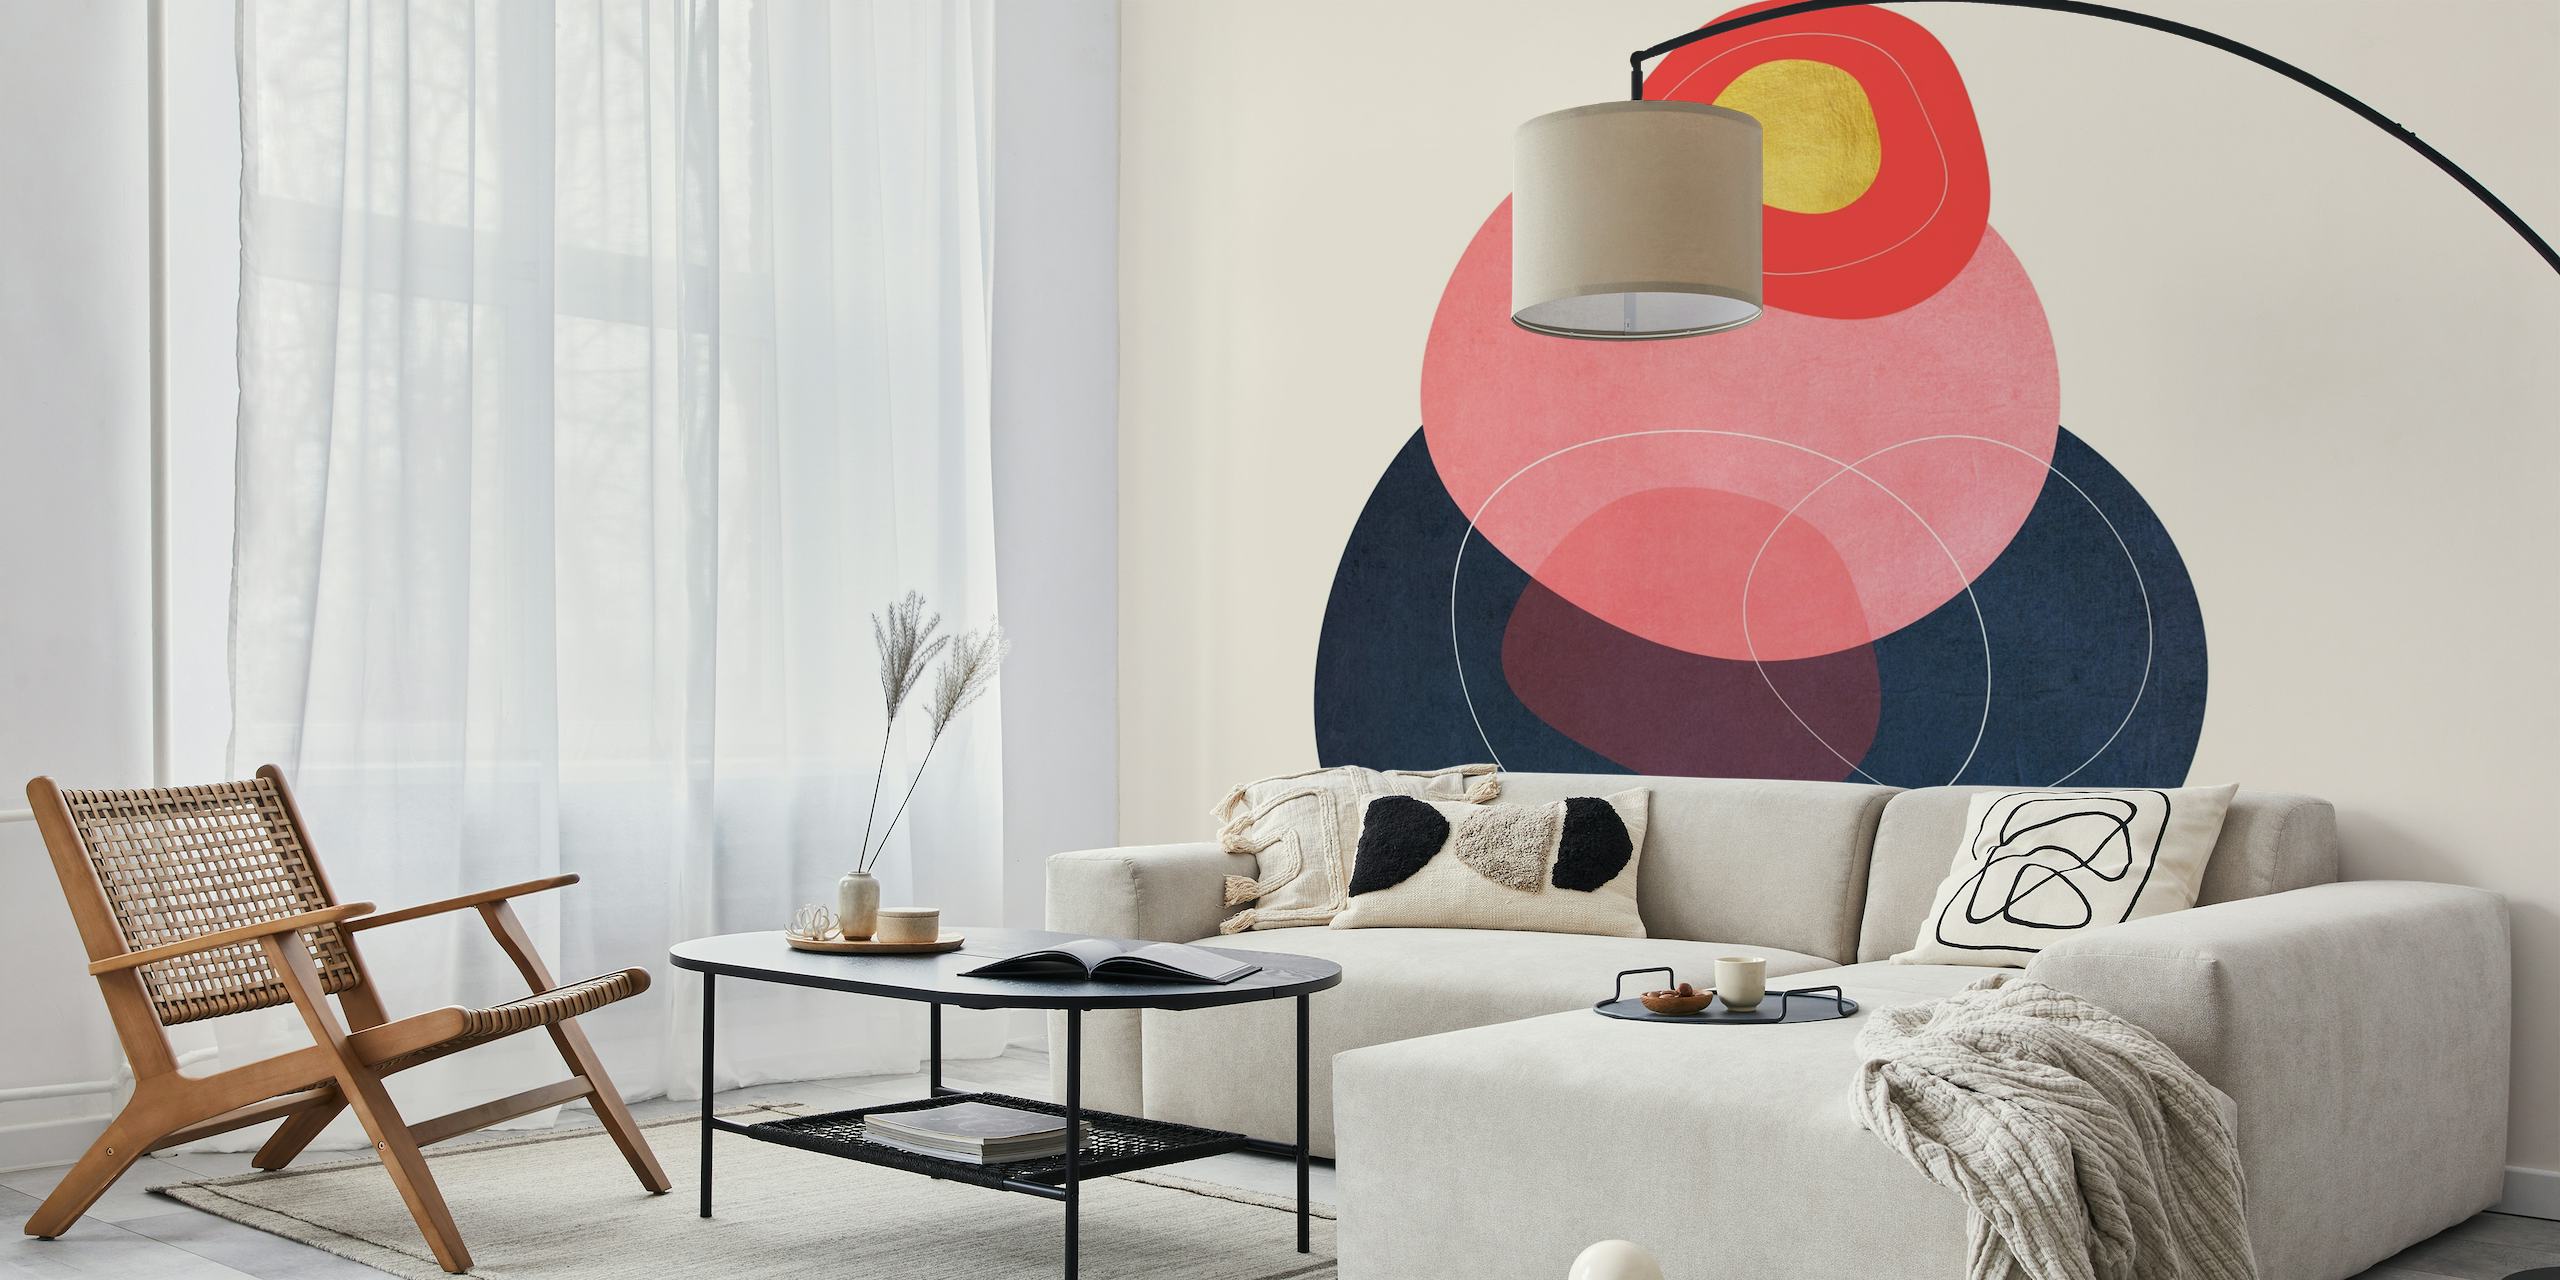 Moderni Minimal Forms 27 -seinämaalaus, jossa on abstrakteja geometrisia muotoja pastellinsävyisinä